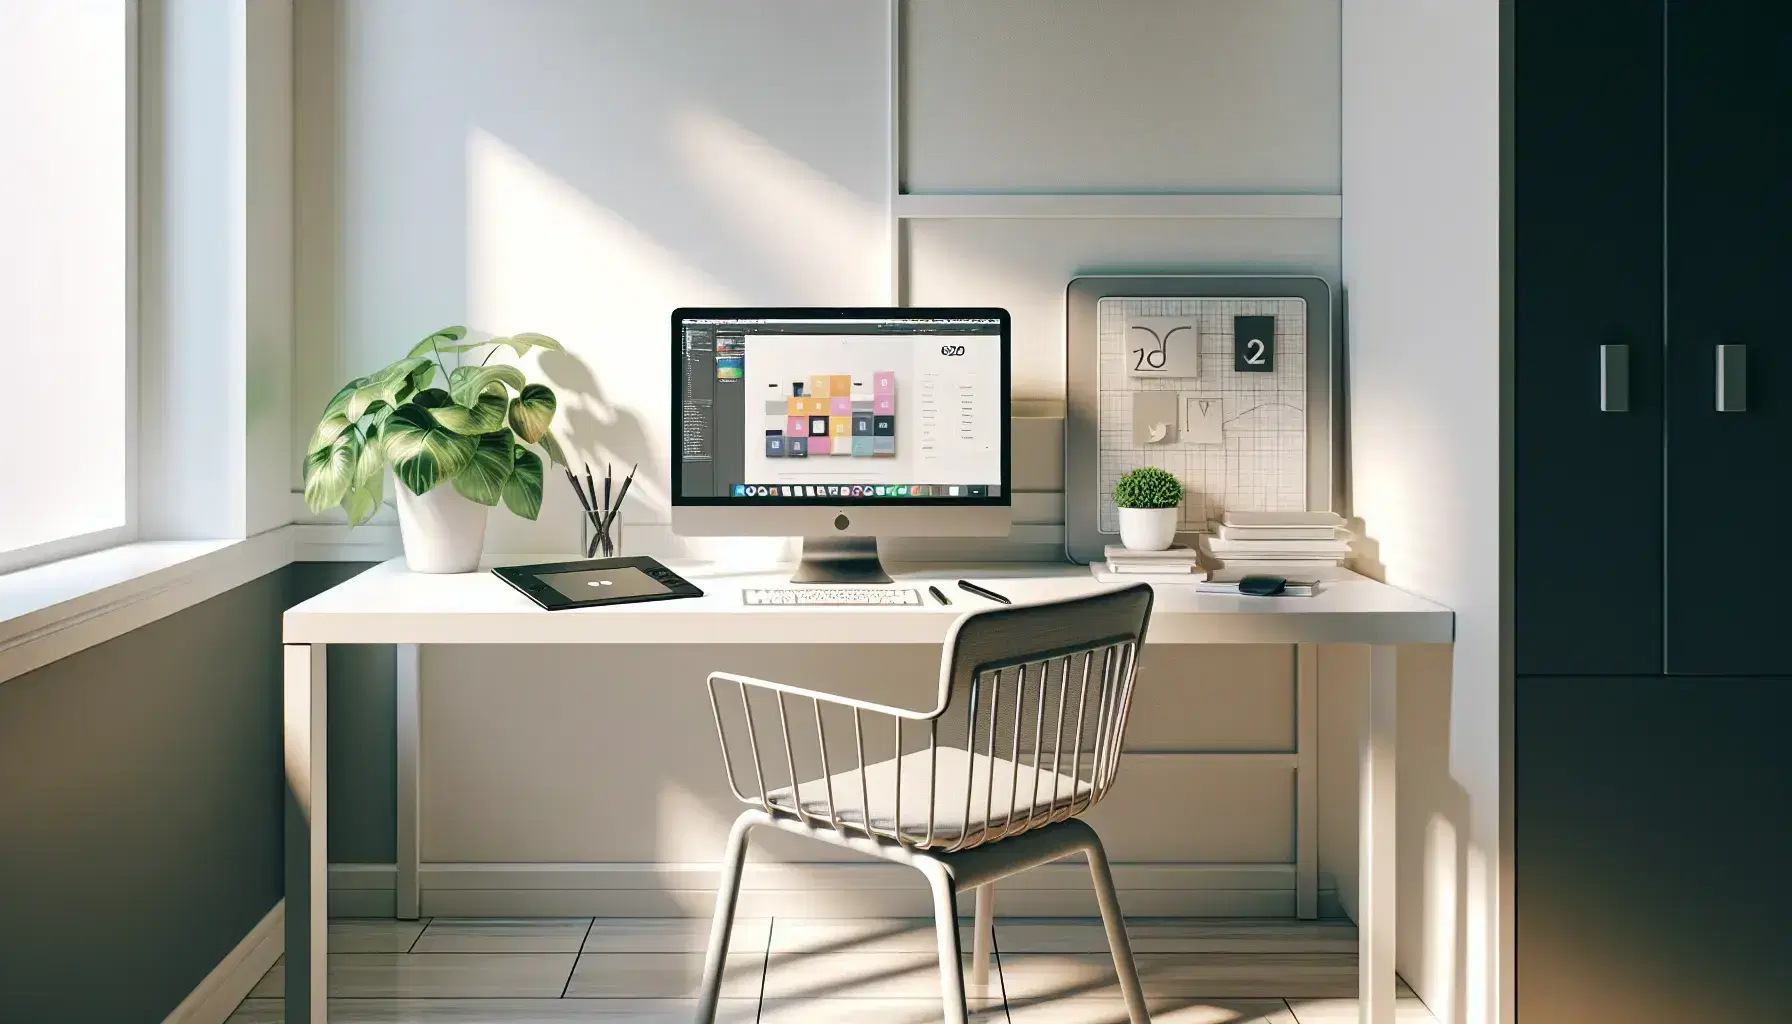 Espacio de trabajo moderno para diseño web con escritorio blanco, portátil con interfaz gráfica, tableta y planta, iluminado naturalmente.